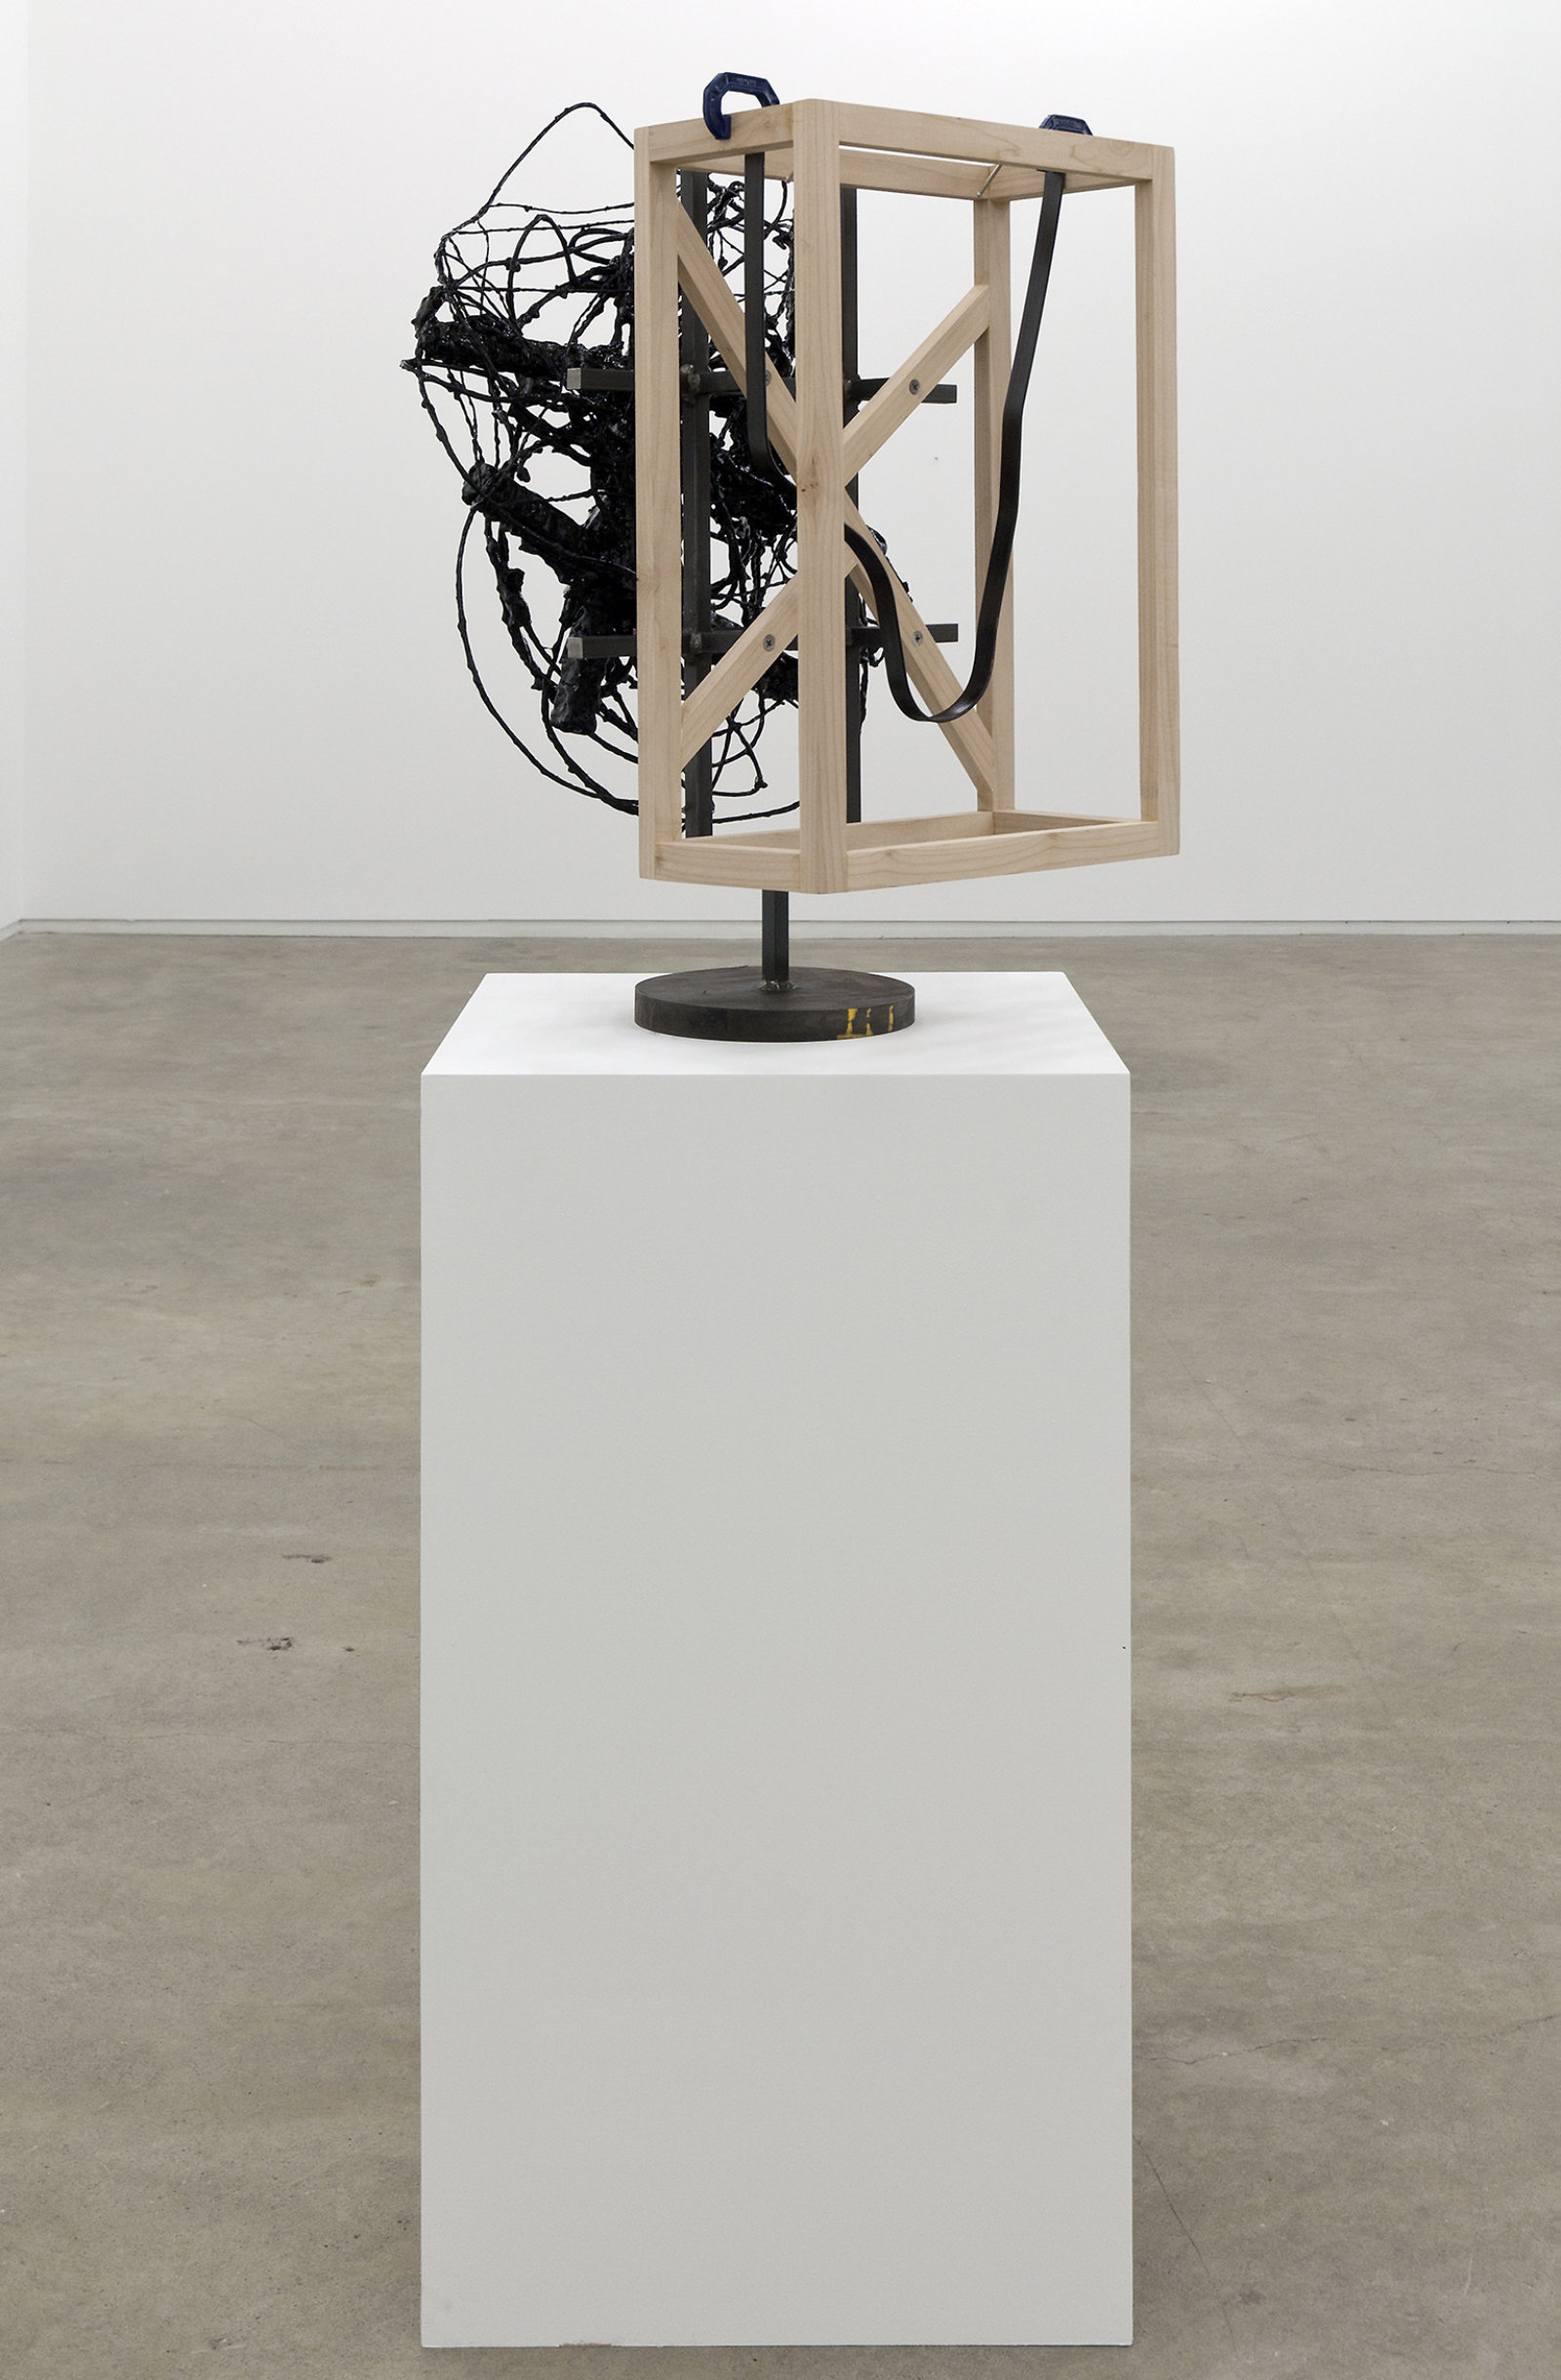 Damian Moppett, Untitled, 2010, steel, wood, wire, plaster, enamel, clamps, 27 x 18 x 18 in. (69 x 46 x 44 cm)